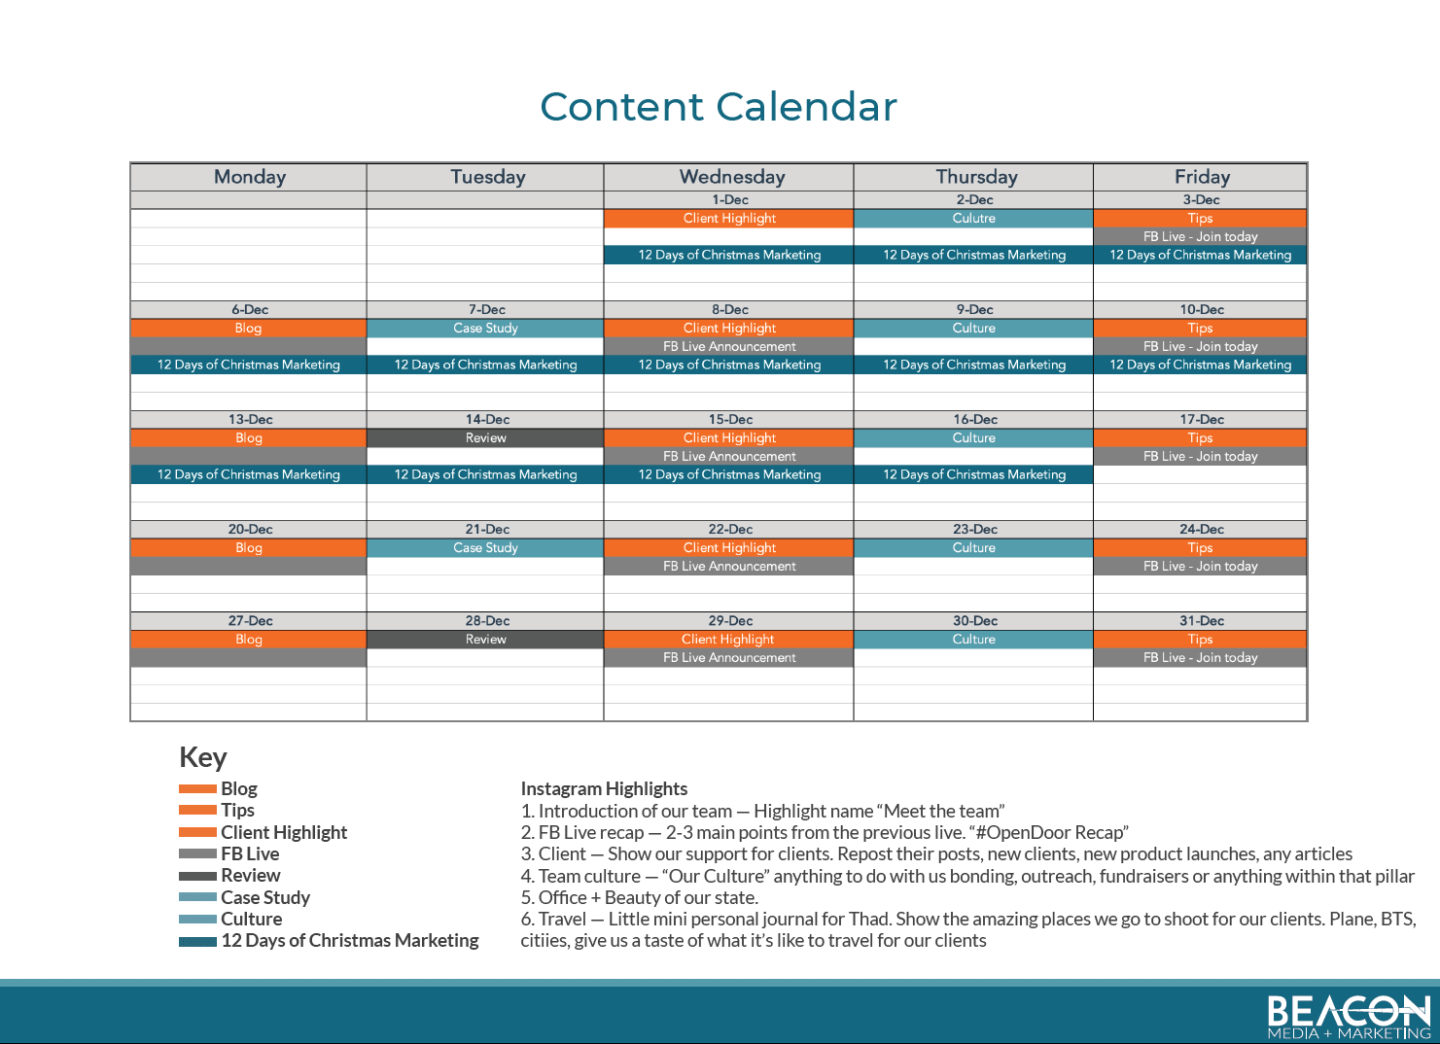 Beacon content calendar example